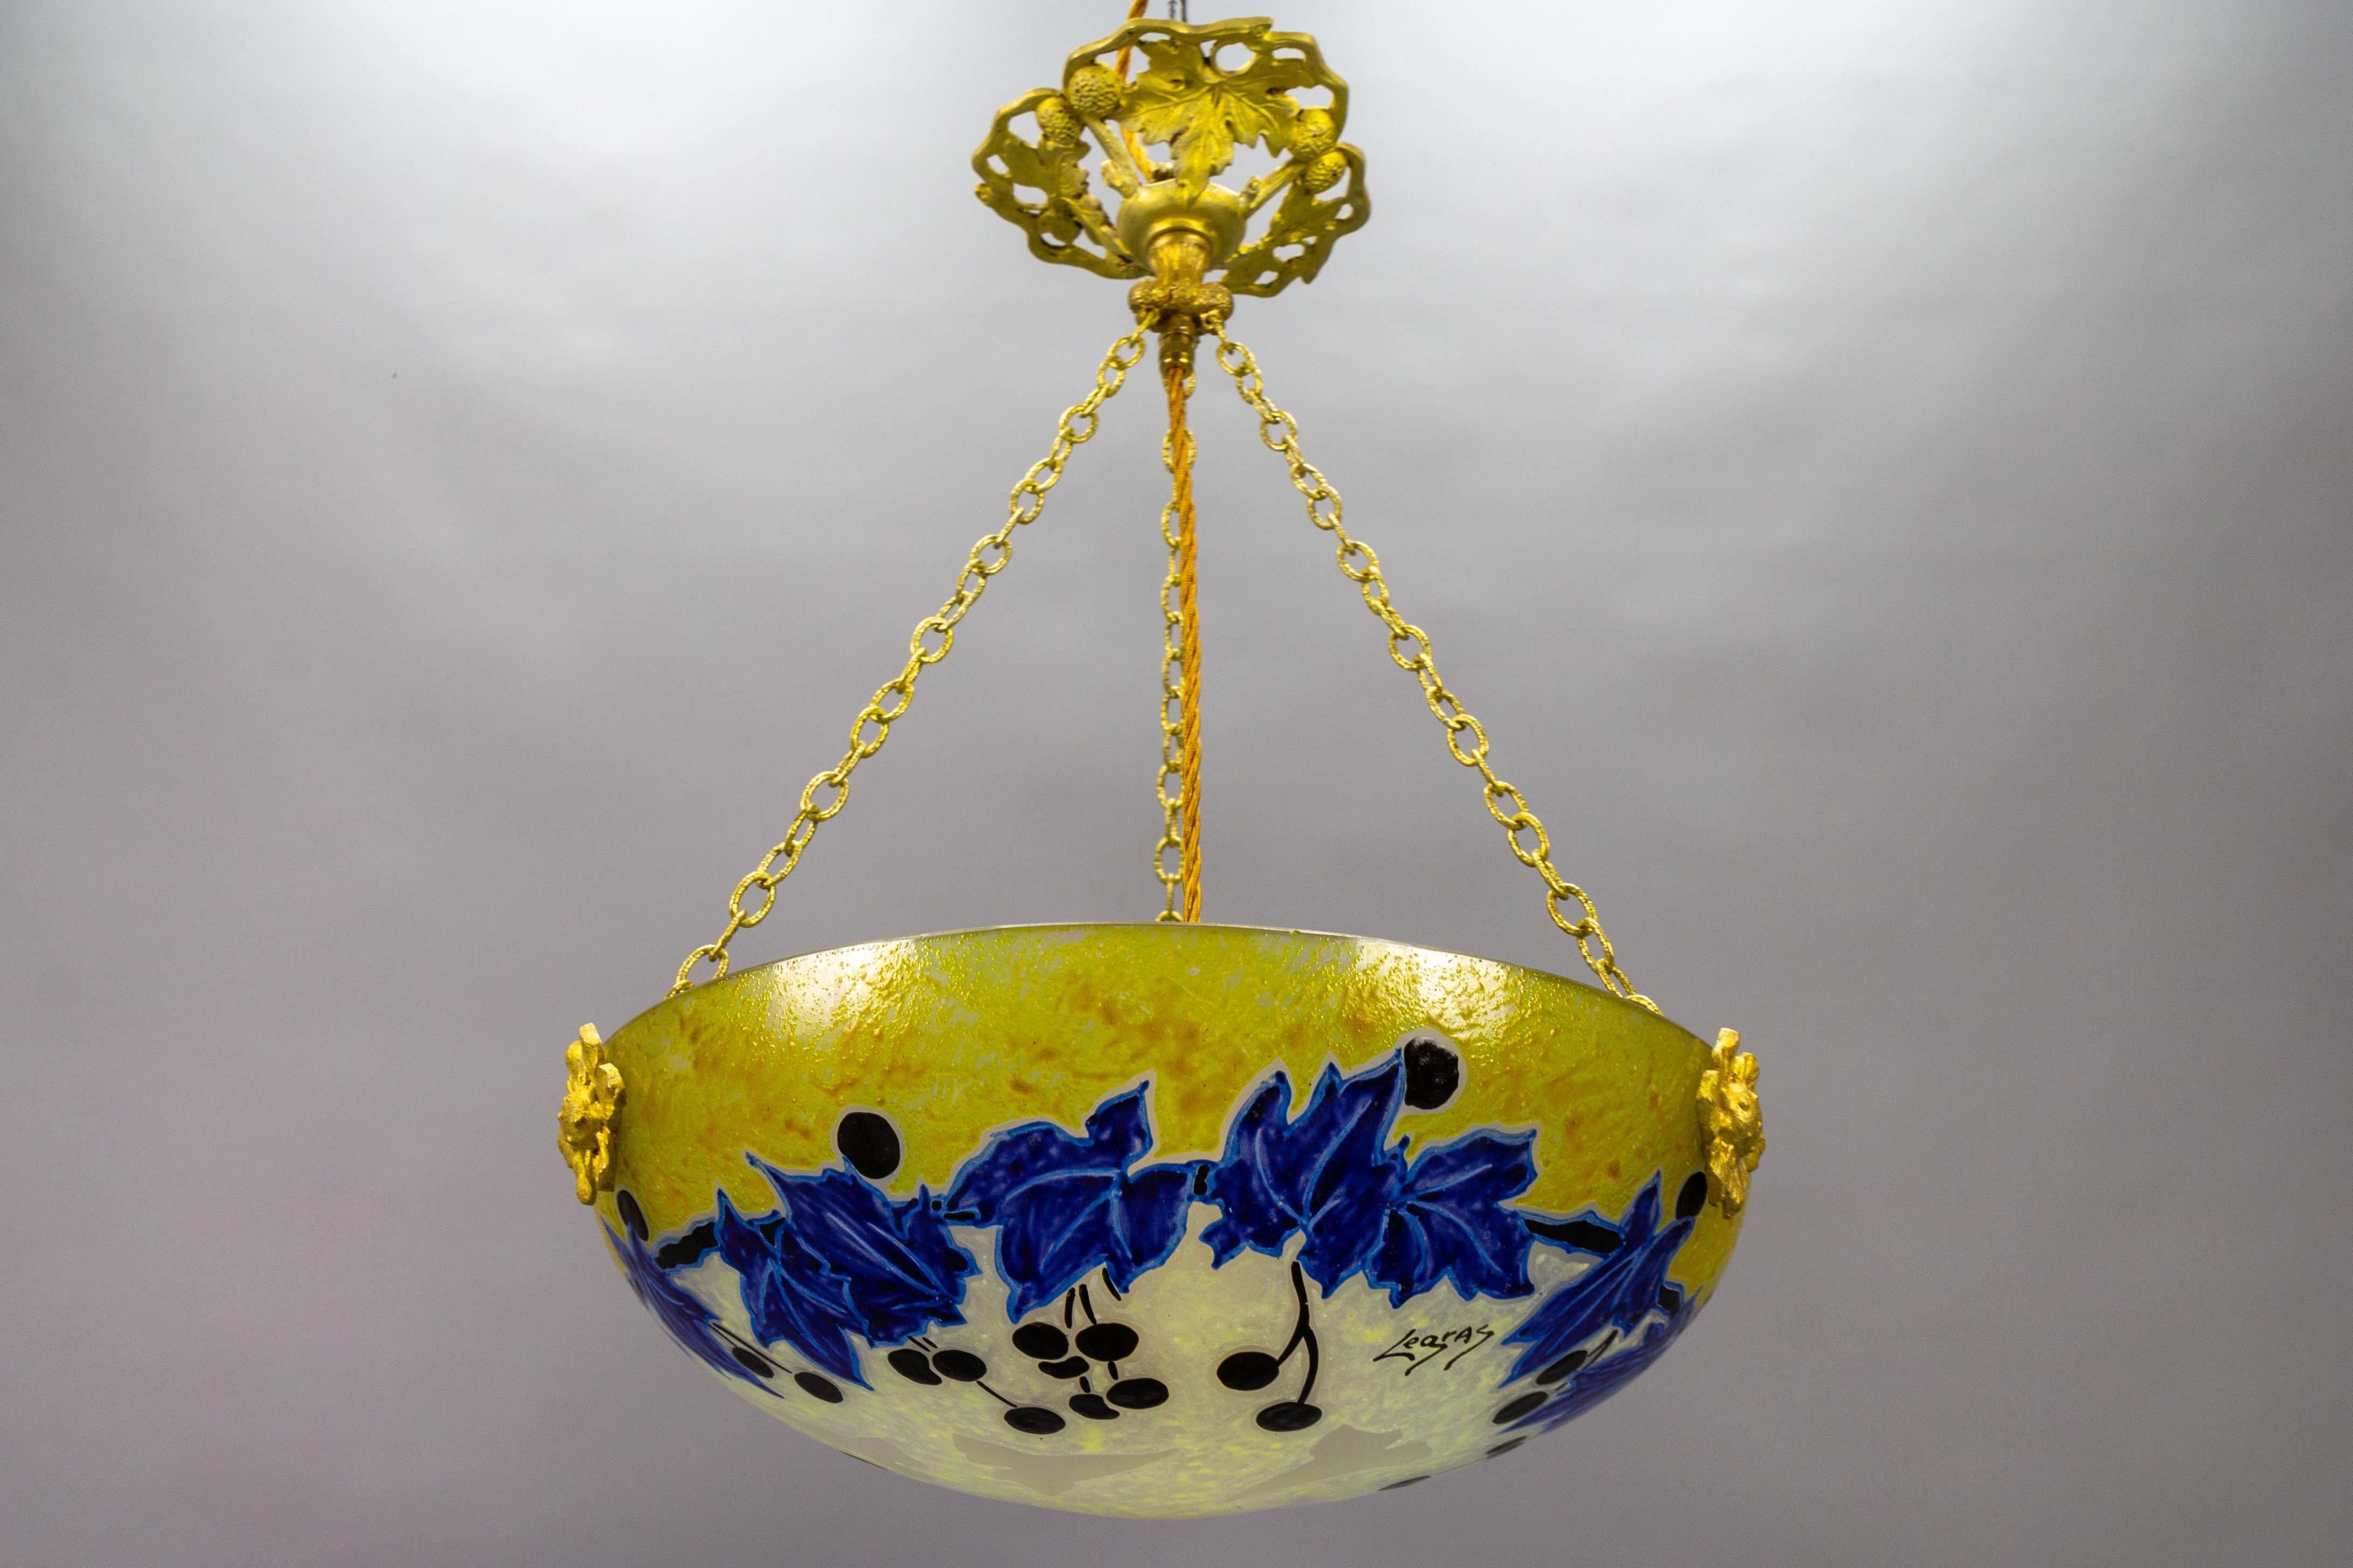 Suspension française Art nouveau en verre jaune et bleu avec motifs de lierre signée Legras, vers 1920.
Cette magnifique lampe suspendue d'époque Art Nouveau présente un bol en verre dépoli avec des feuilles de lierre stylisées et des fruits